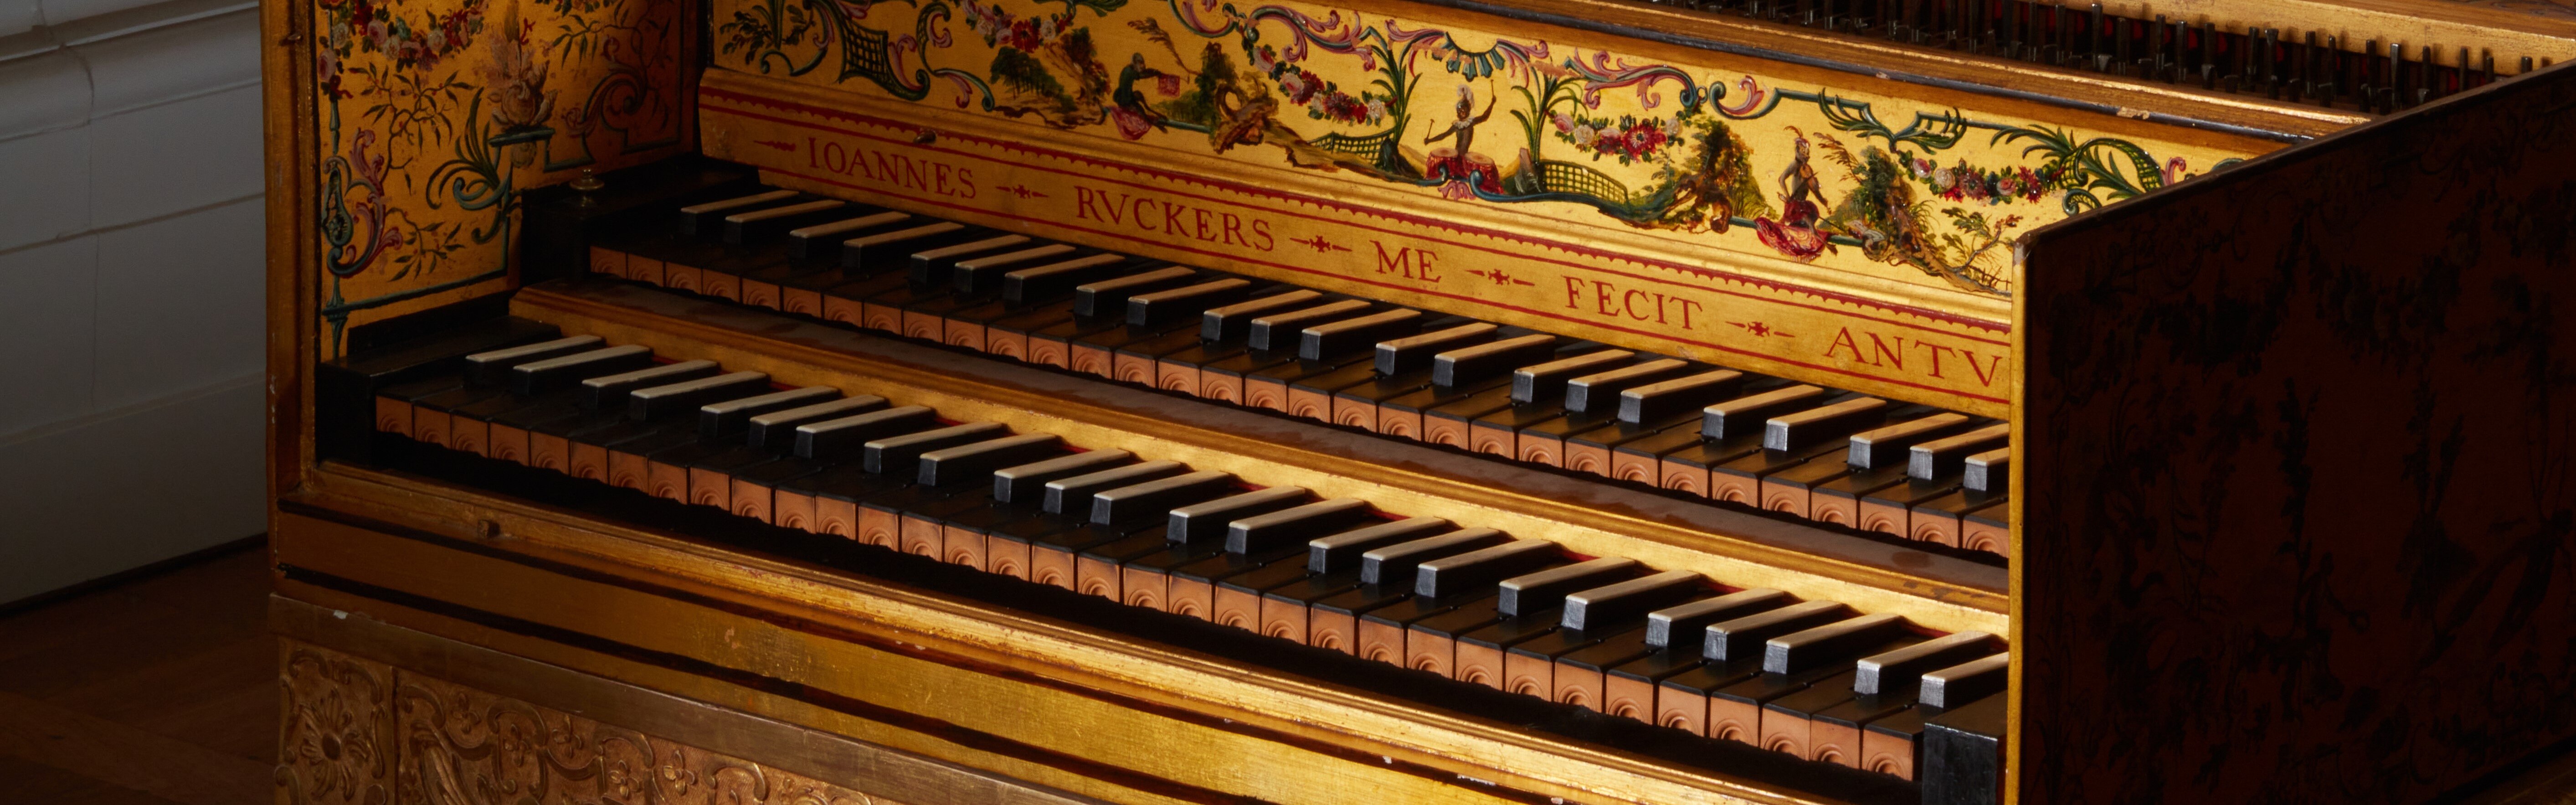 Concert sur le clavecin Ruckers par Michael Parisot